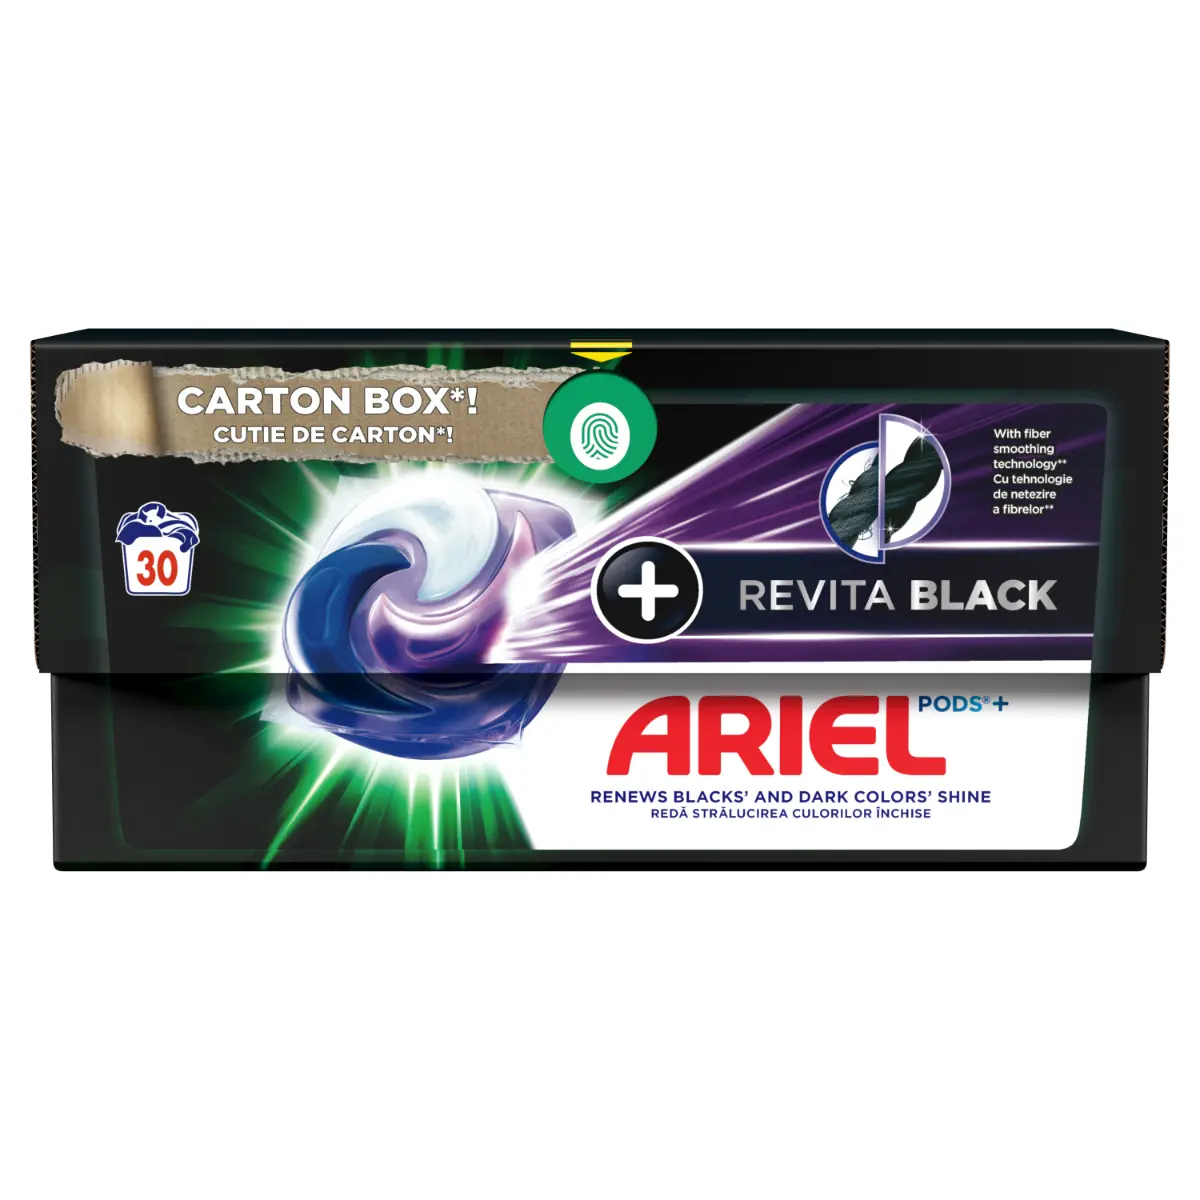 Detergent de rufe capsule Ariel PODS+ Revita Black, 30 spalari